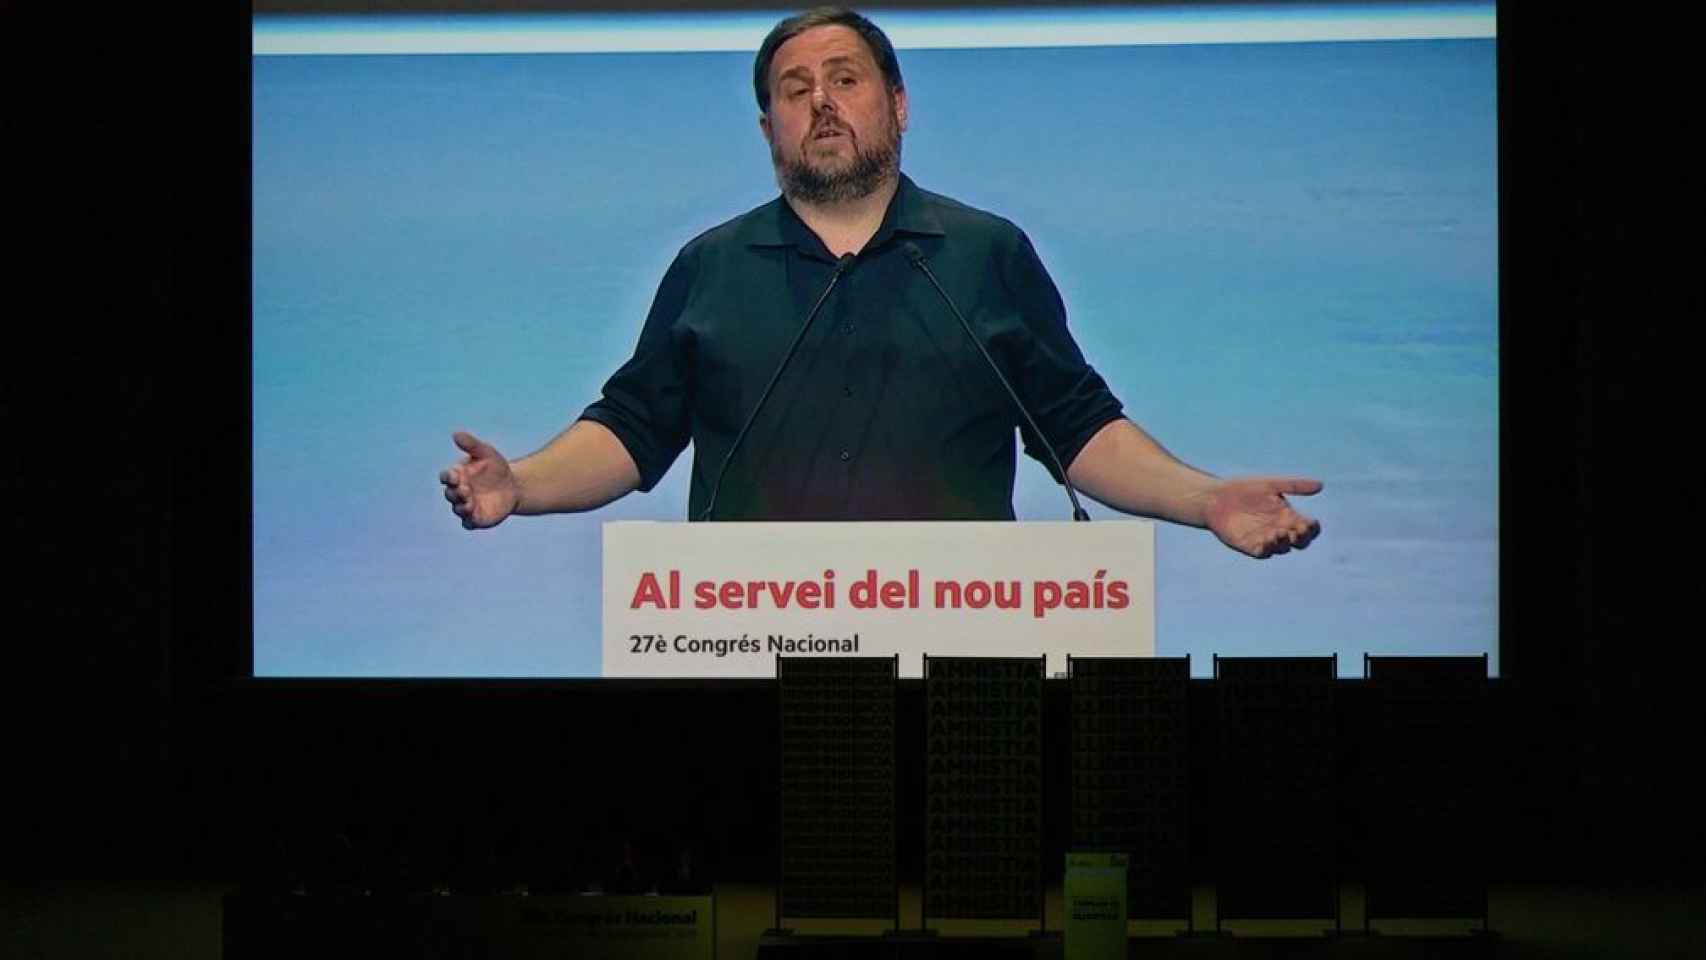 Imagen de Oriol Junqueras en el 28 Congrés Nacinal.